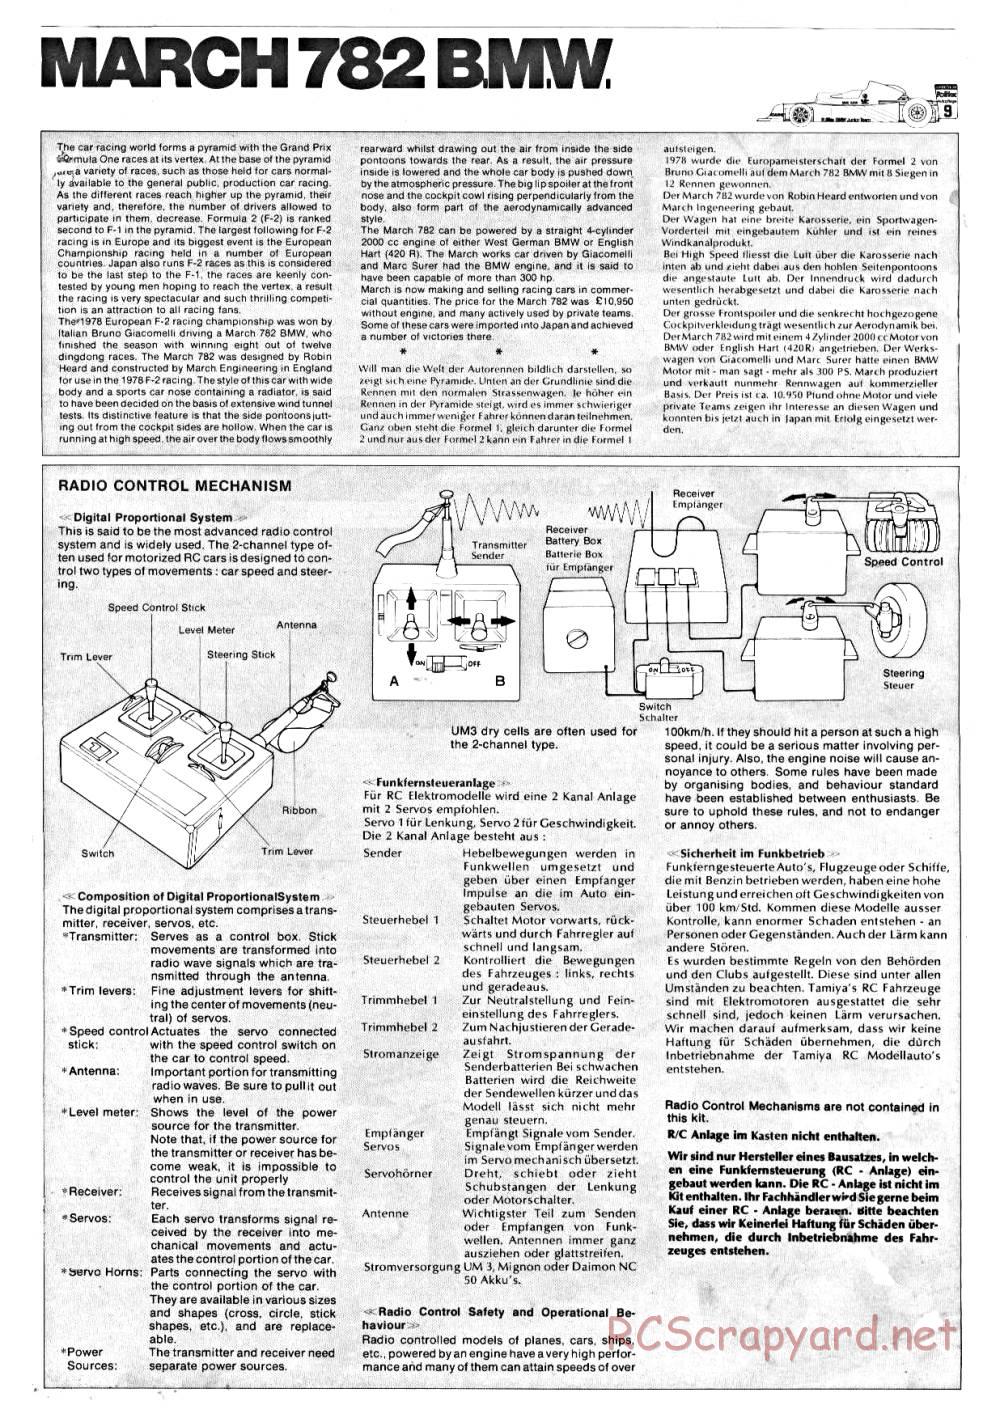 Tamiya - March 782 BMW (F2) - 58013 - Manual - Page 2